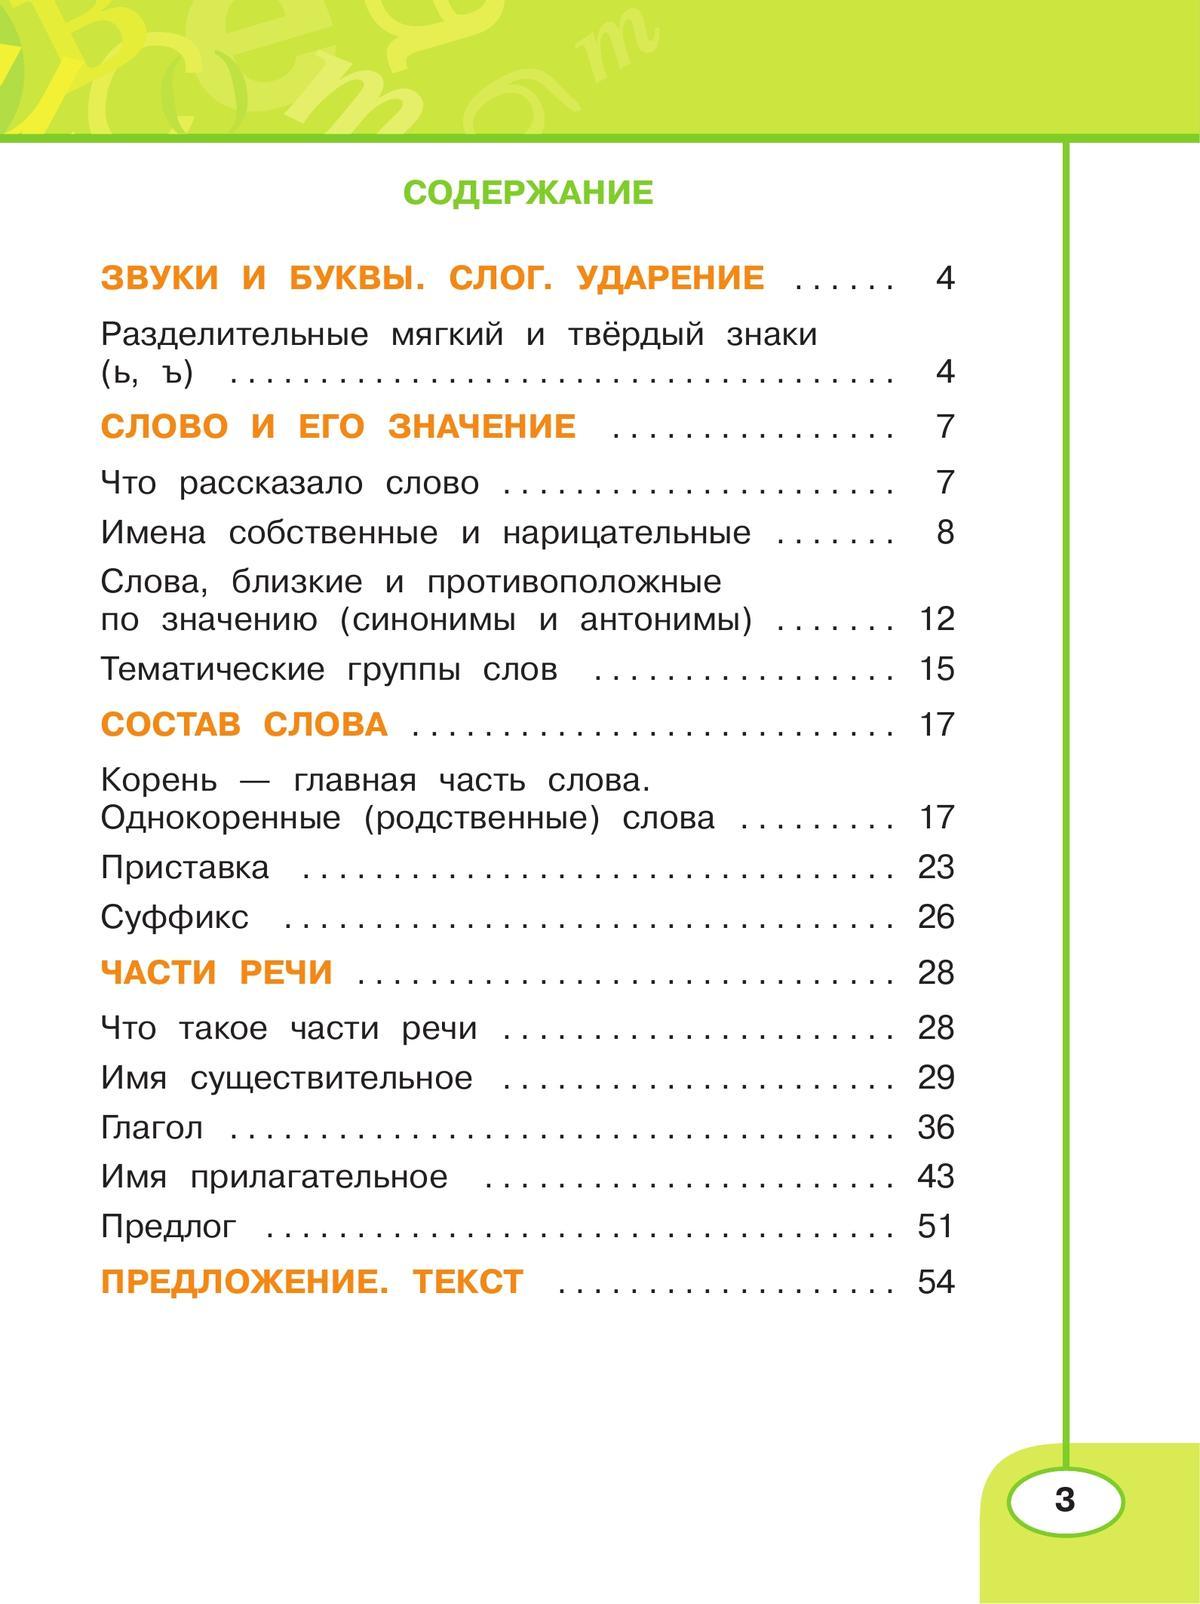 Русский язык. Рабочая тетрадь. 2 класс. В 2 частях. Часть 2 7